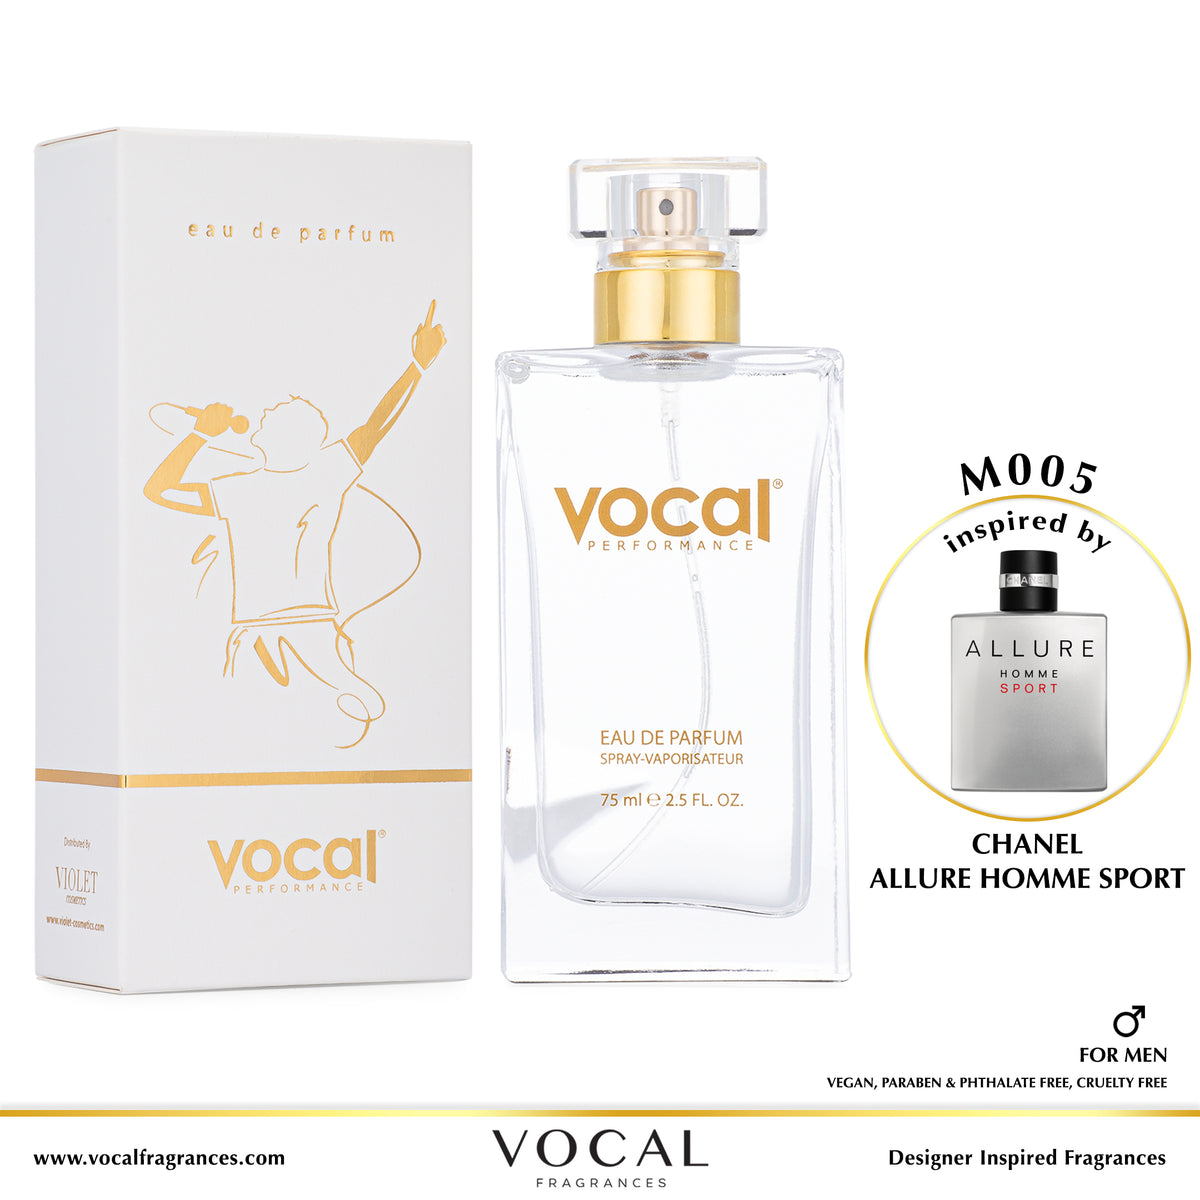 M005 Vocal Performance Eau De Parfum For Men Inspired by Chanel